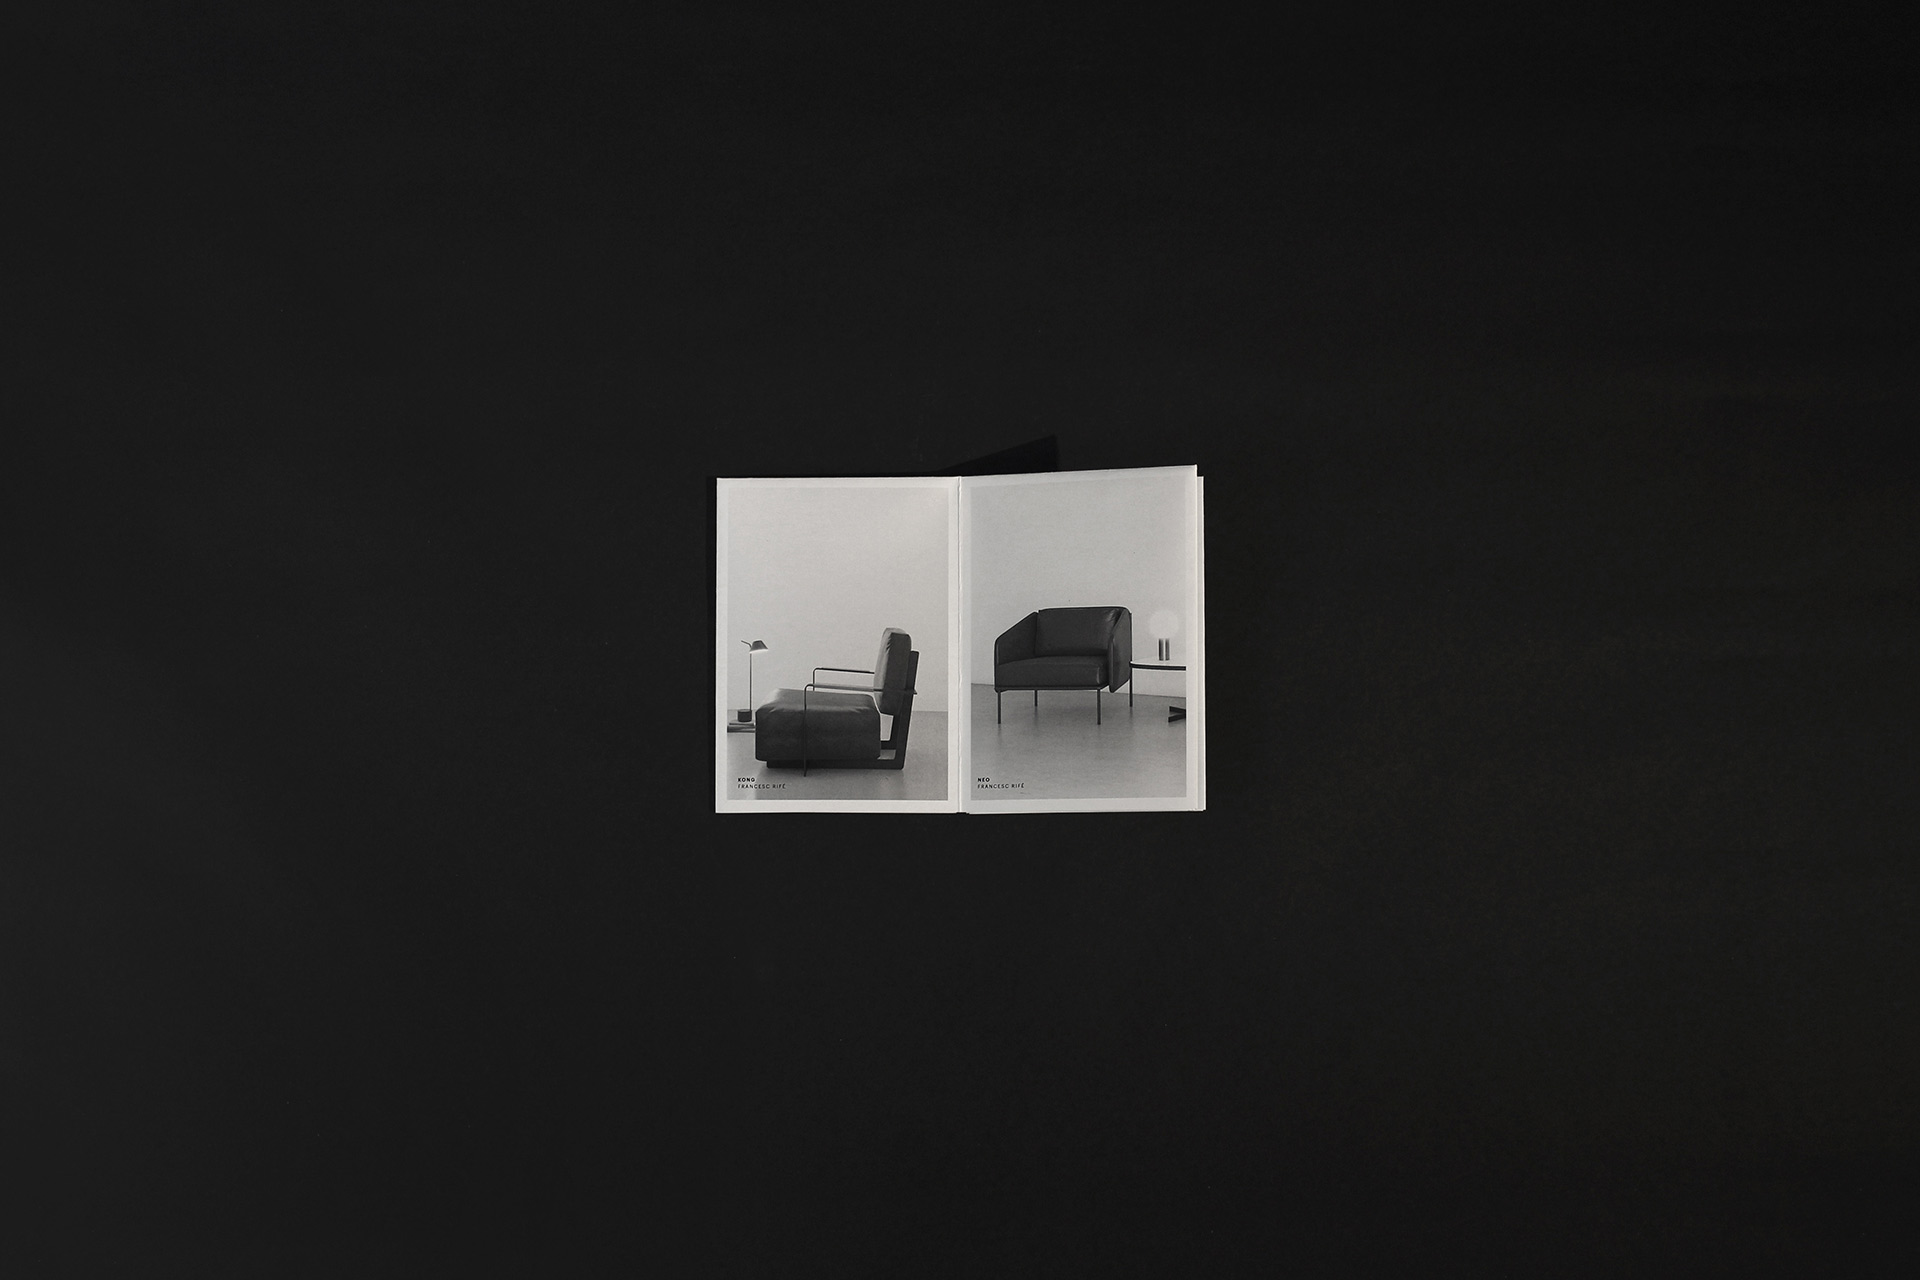 Fase, estudio de diseño gráfico. Brochure desplegable, Black Tone by JMM.